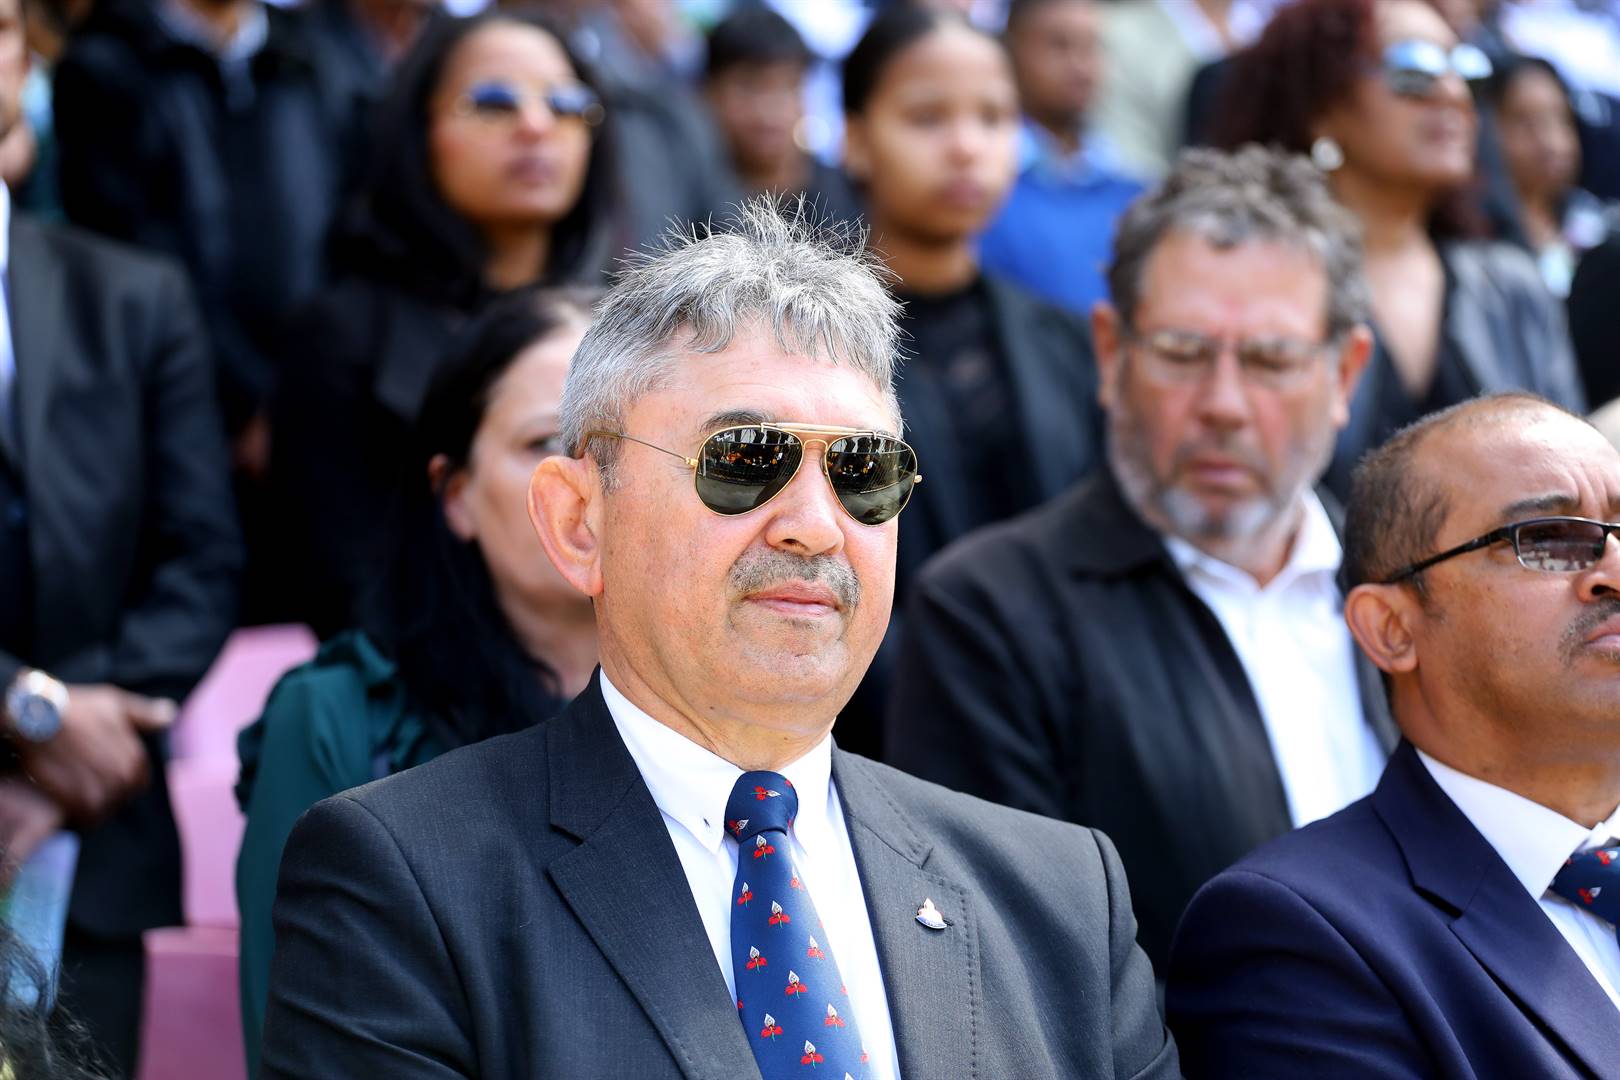 Zelt Marais, geskorste president van die WP Rugbyunie, het teen die Suid-Afrikaanse Rugbyunie uitgevaar oor die besluit om die Kaapse unie onder administrasie te plaas.  Foto: Gallo Images